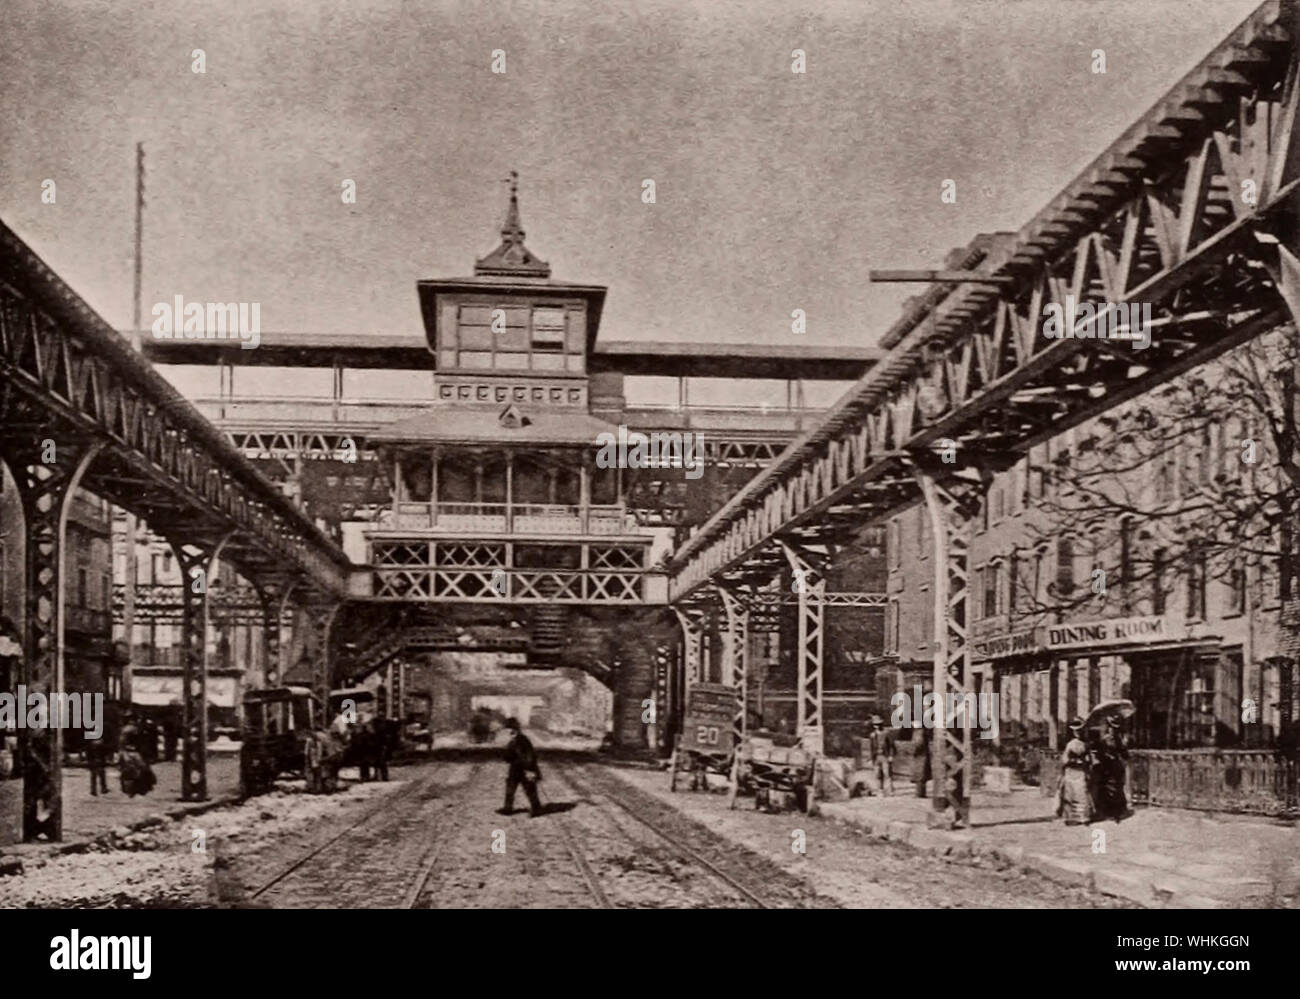 Chemin de fer élevée, la 2e Avenue et 34th Street, New York City, vers 1891 Banque D'Images